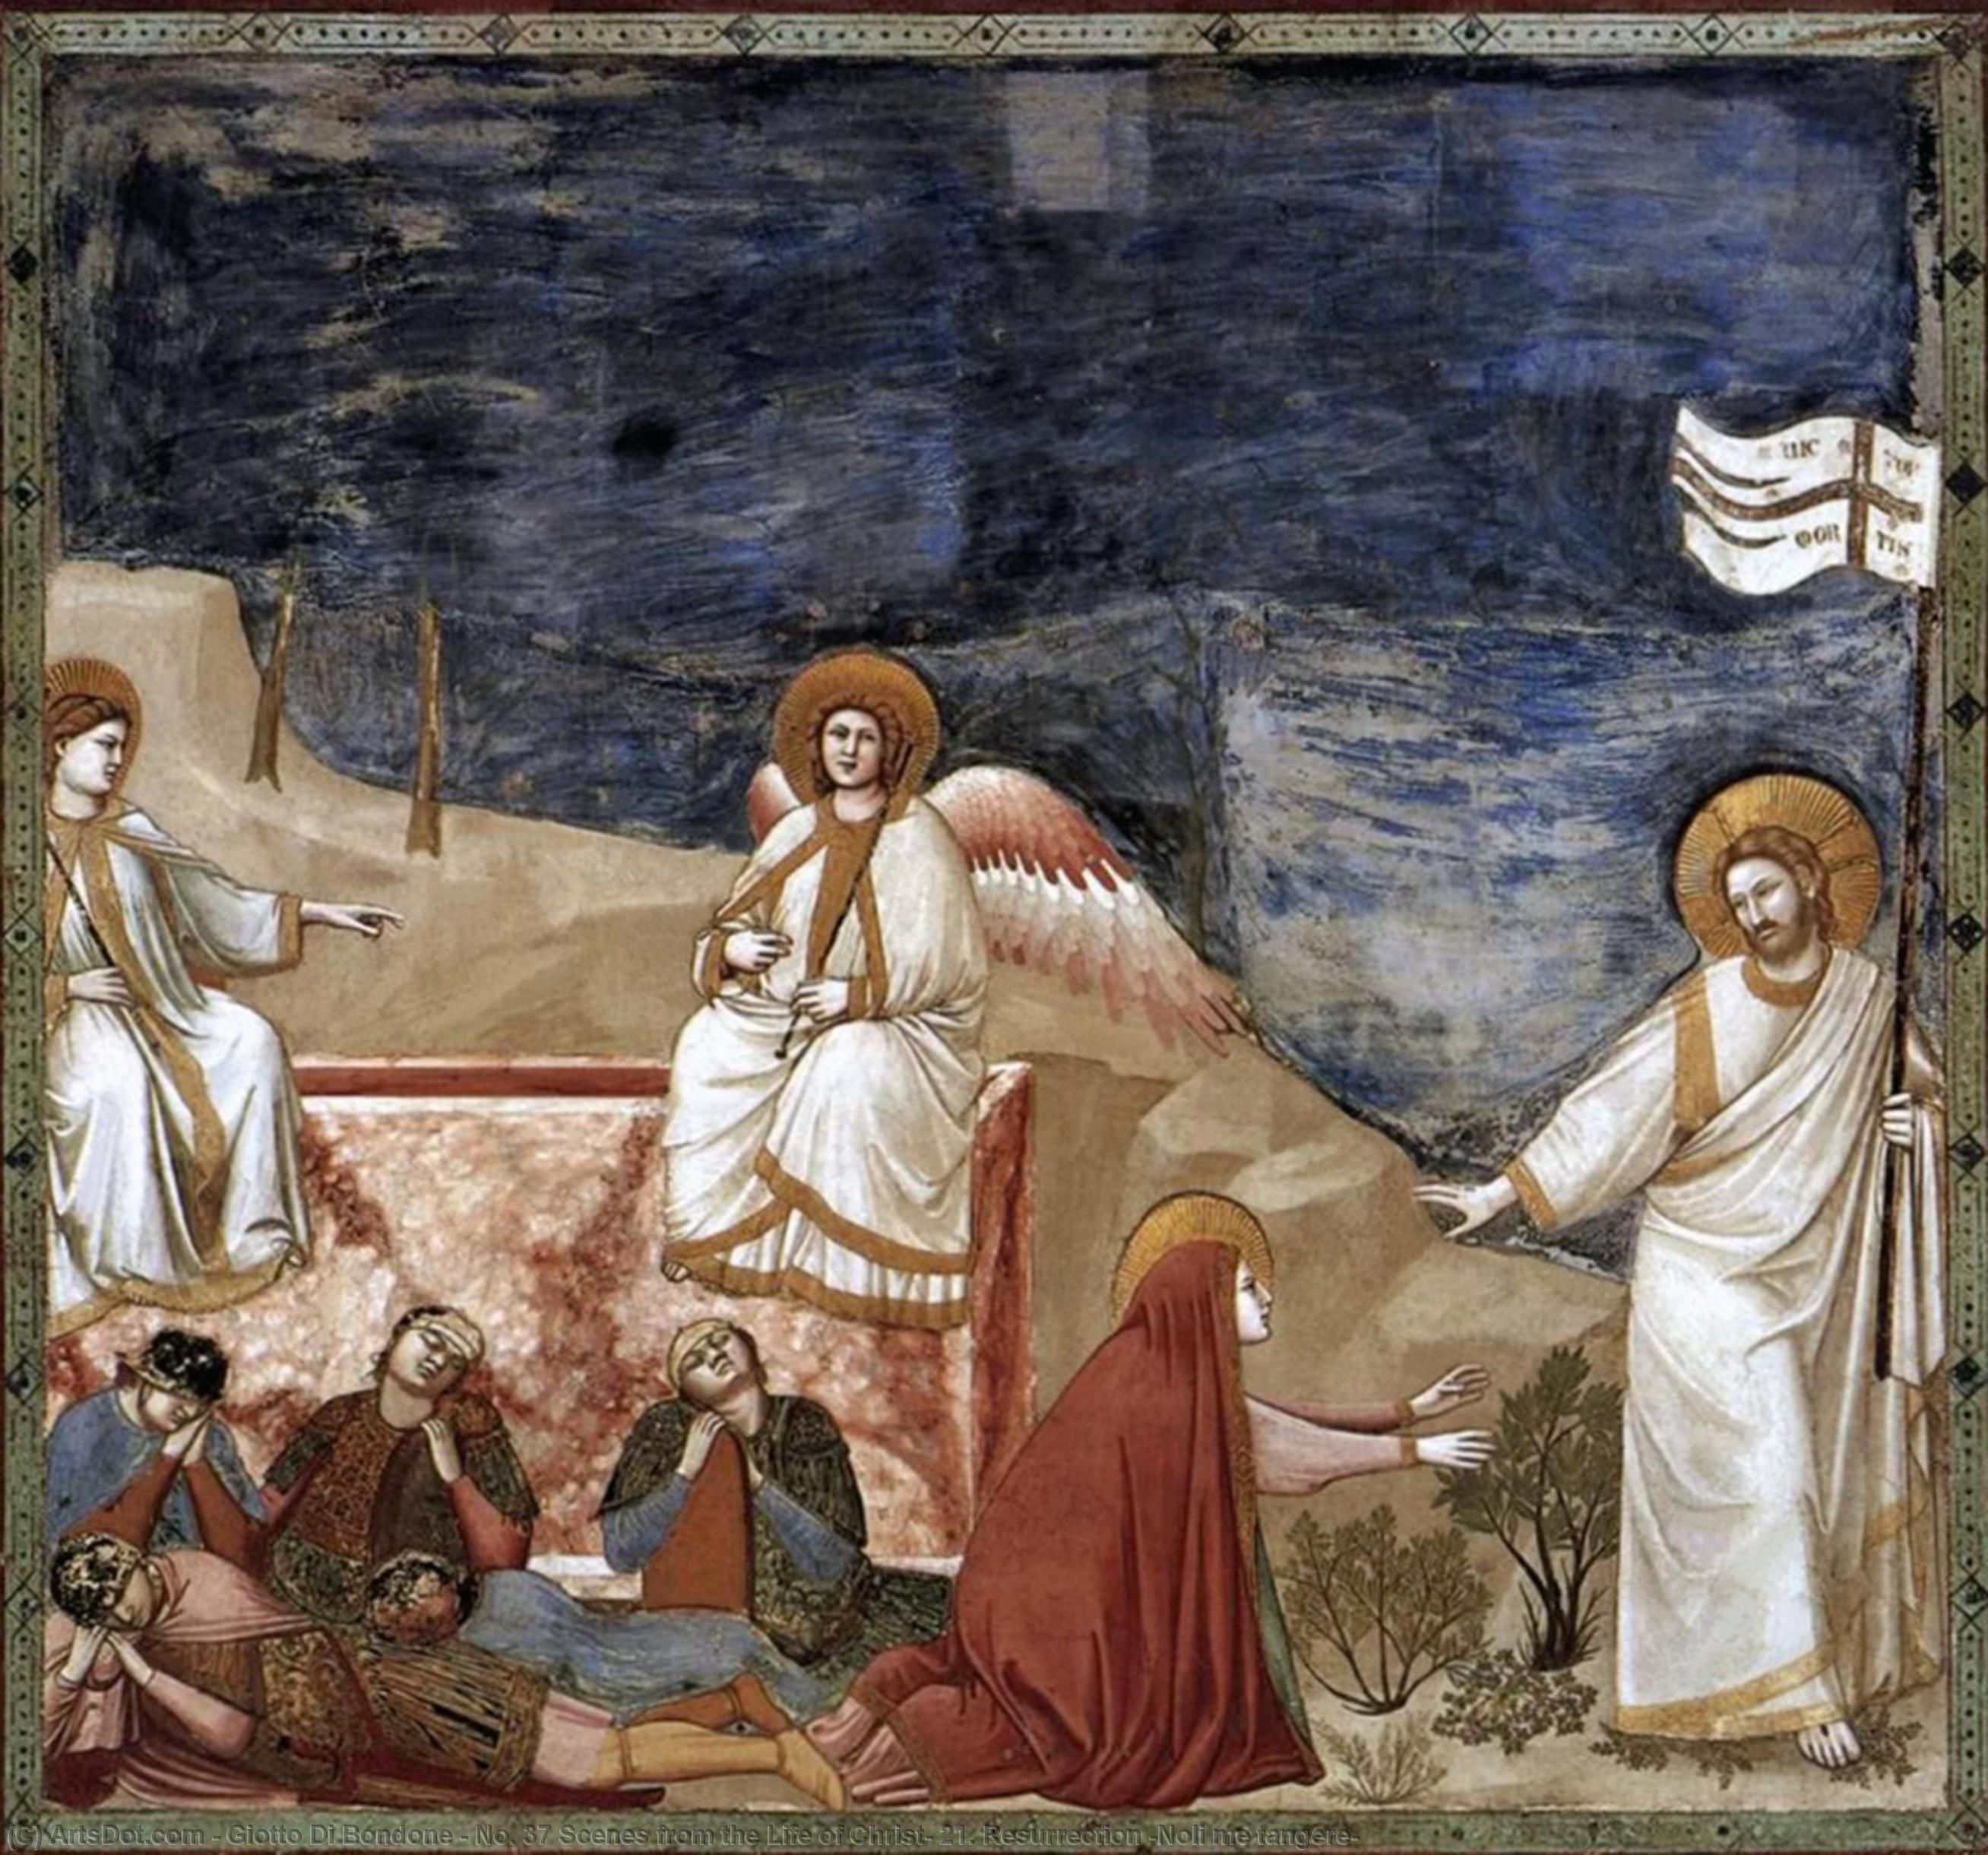 WikiOO.org - Encyclopedia of Fine Arts - Maleri, Artwork Giotto Di Bondone - No. 37 Scenes from the Life of Christ: 21. Resurrection (Noli me tangere)